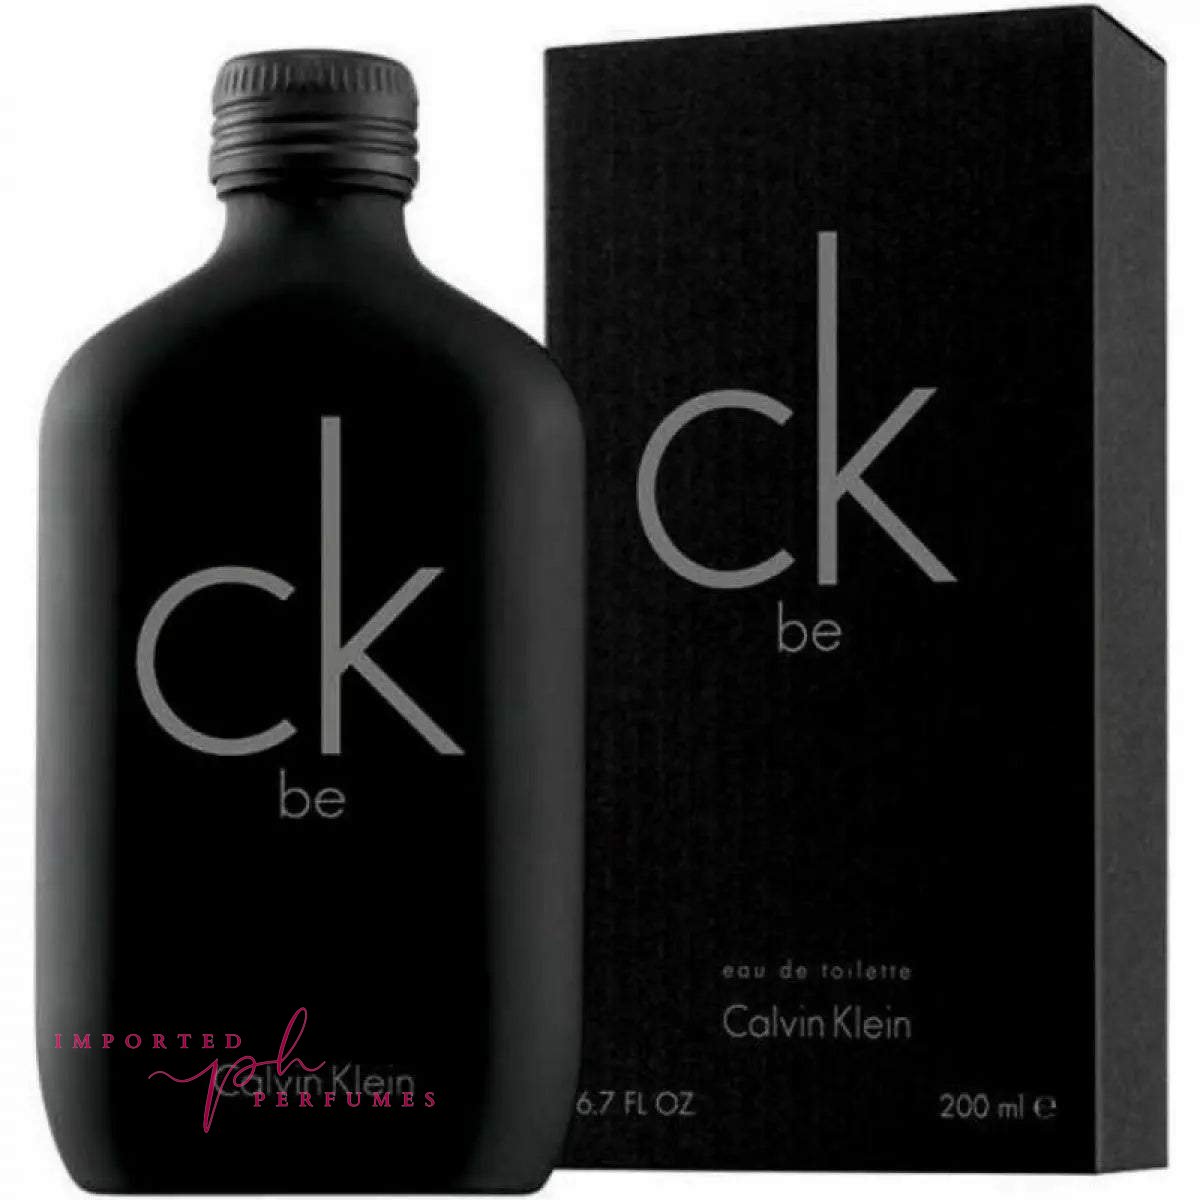 Calvin Klein CK BE 200ml Eau De Toilette For Men-Imported Perfumes Co-200ml,Calvin Klein,CK,Eau De Toilette,men